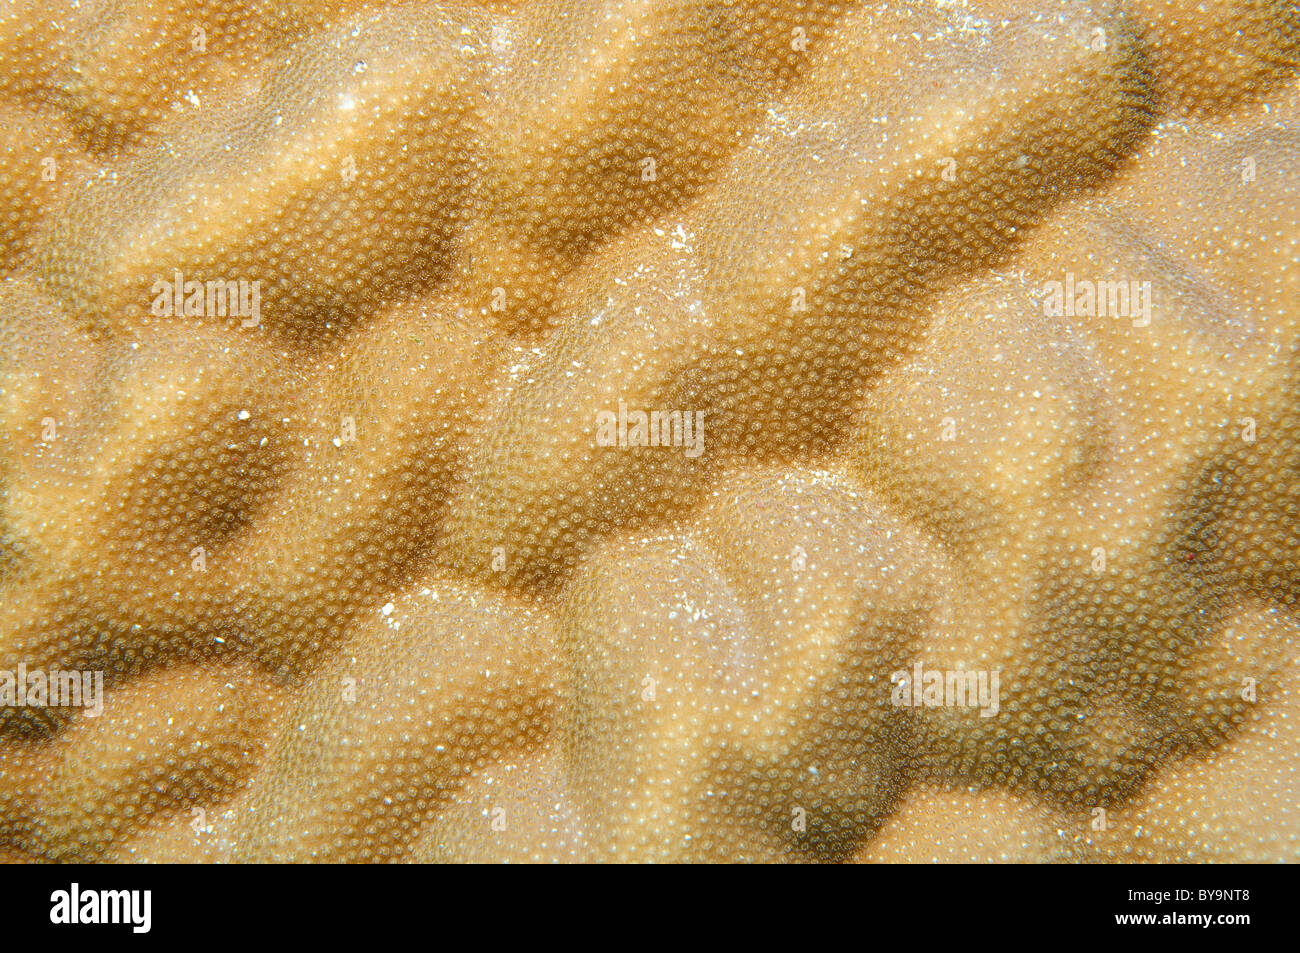 Struttura della barriera corallina. Corallo duro Porites lutea Foto Stock